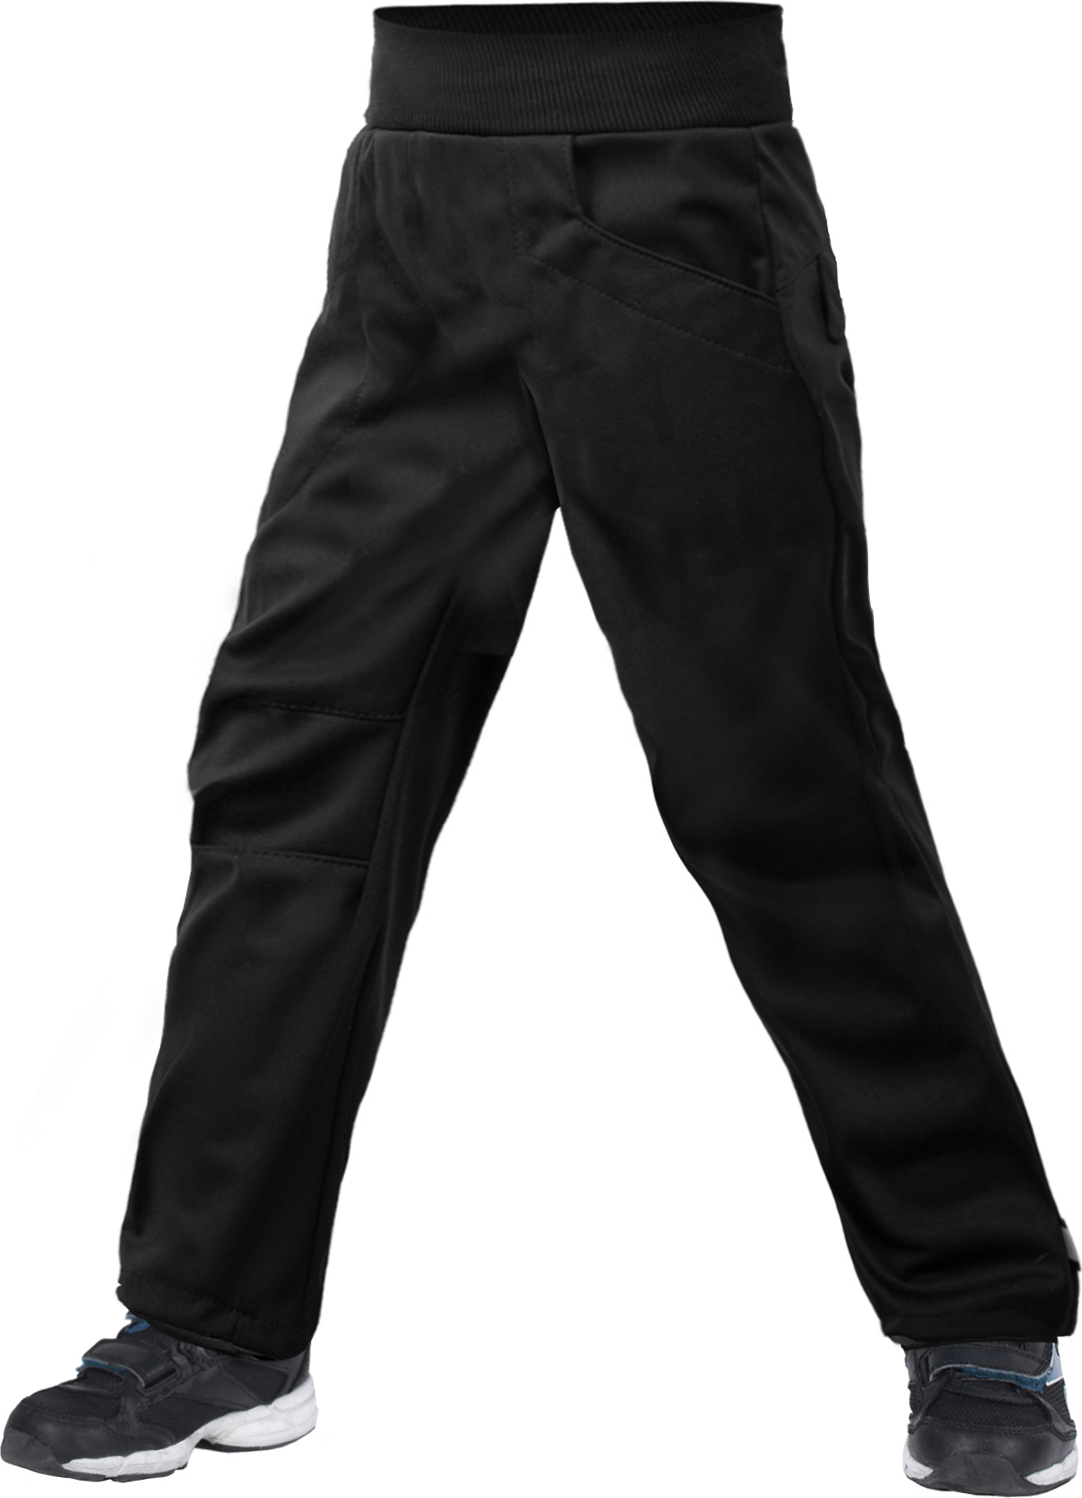 Dětské softshellové kalhoty UNUO Cool bez zateplení pružné, Černá Velikost: 104/110